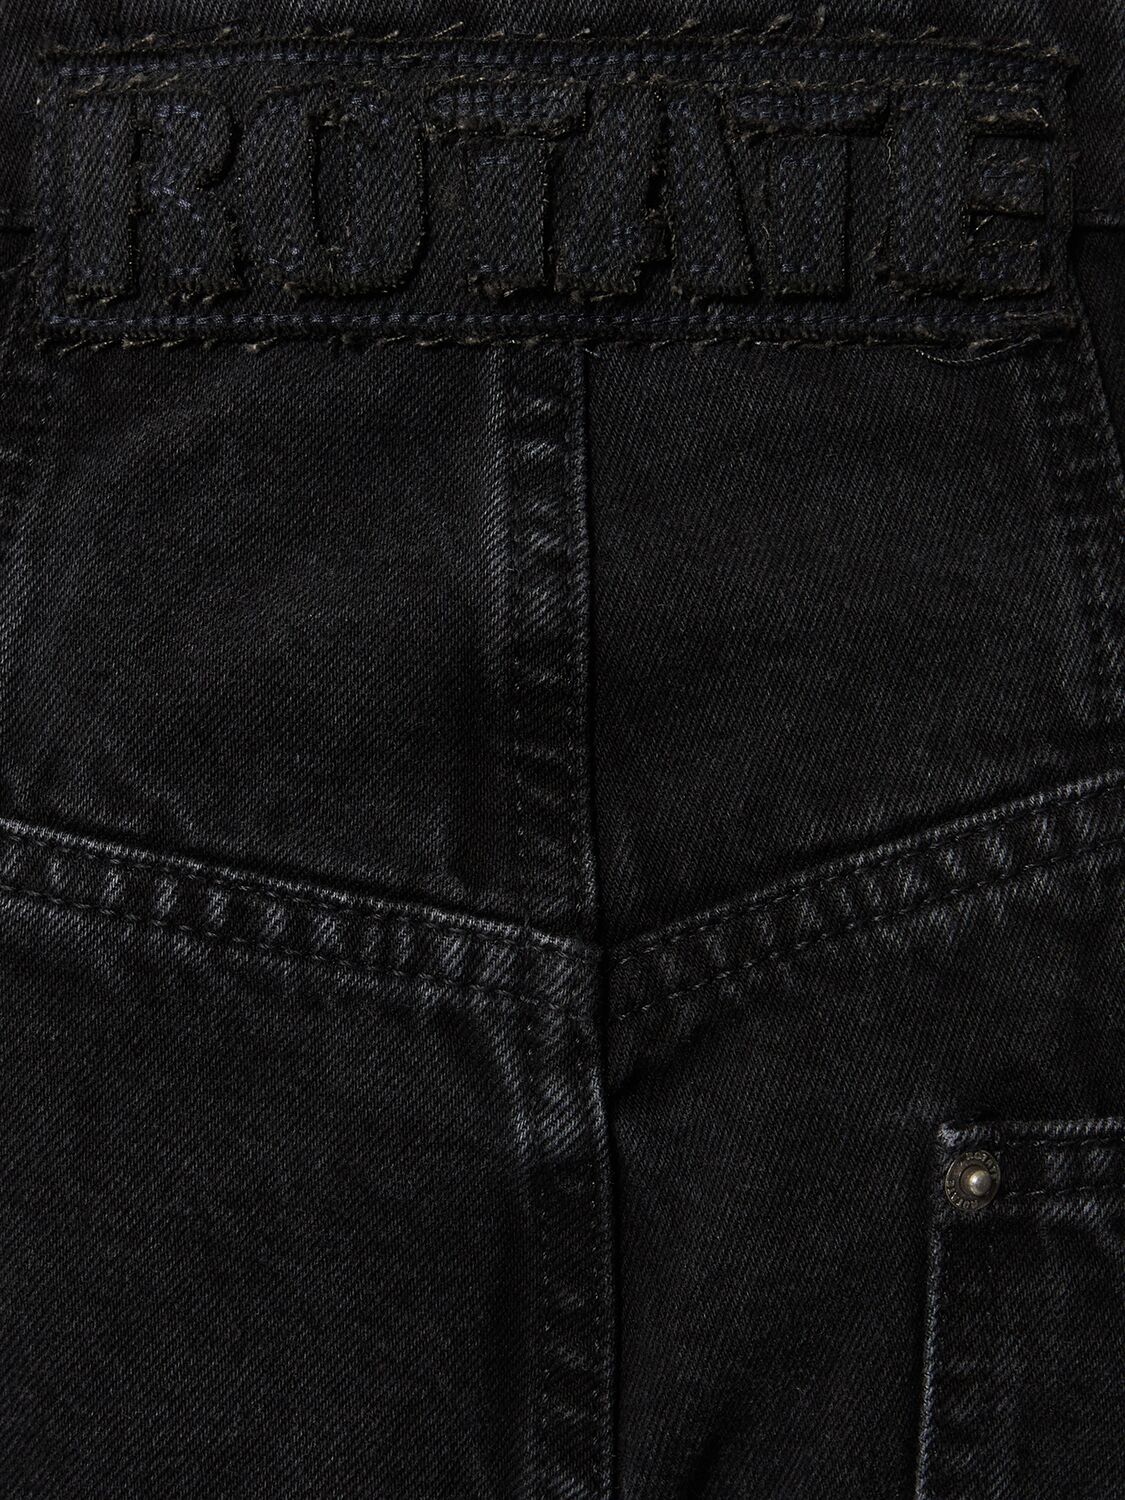 Shop Rotate Birger Christensen Washed Denim Wide Pants In Black - Washed